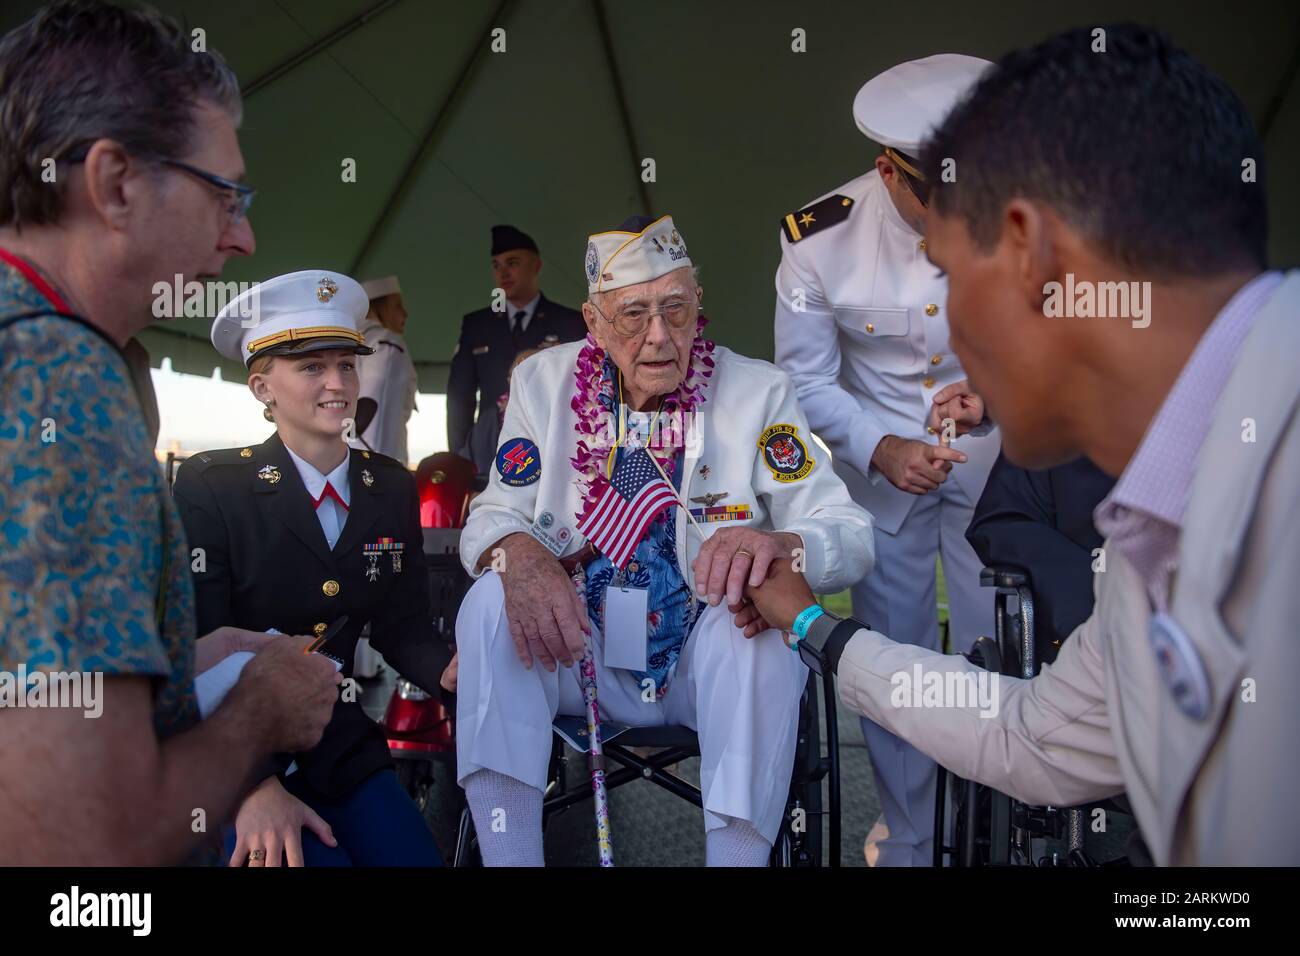 191207-N-XG173-1585 PEARL HARBOR (DÉC 7, 2019) Don long, survivant de Pearl Harbor, reçoit un drapeau américain lors du 78 e anniversaire de la commémoration du Souvenir de Pearl Harbor. La commémoration a permis aux militaires, aux anciens combattants, aux membres de la famille et à la communauté d'honorer les sacrifices consentis par ceux qui étaient présents le 7 décembre 1941. Depuis les attaques, les États-Unis et le Japon ont connu plus de 70 ans de maintien de la paix. (ÉTATS-UNIS Photo marine par Mass Communication Specialist 3ème classe Aja B. Jackson/libéré) Banque D'Images